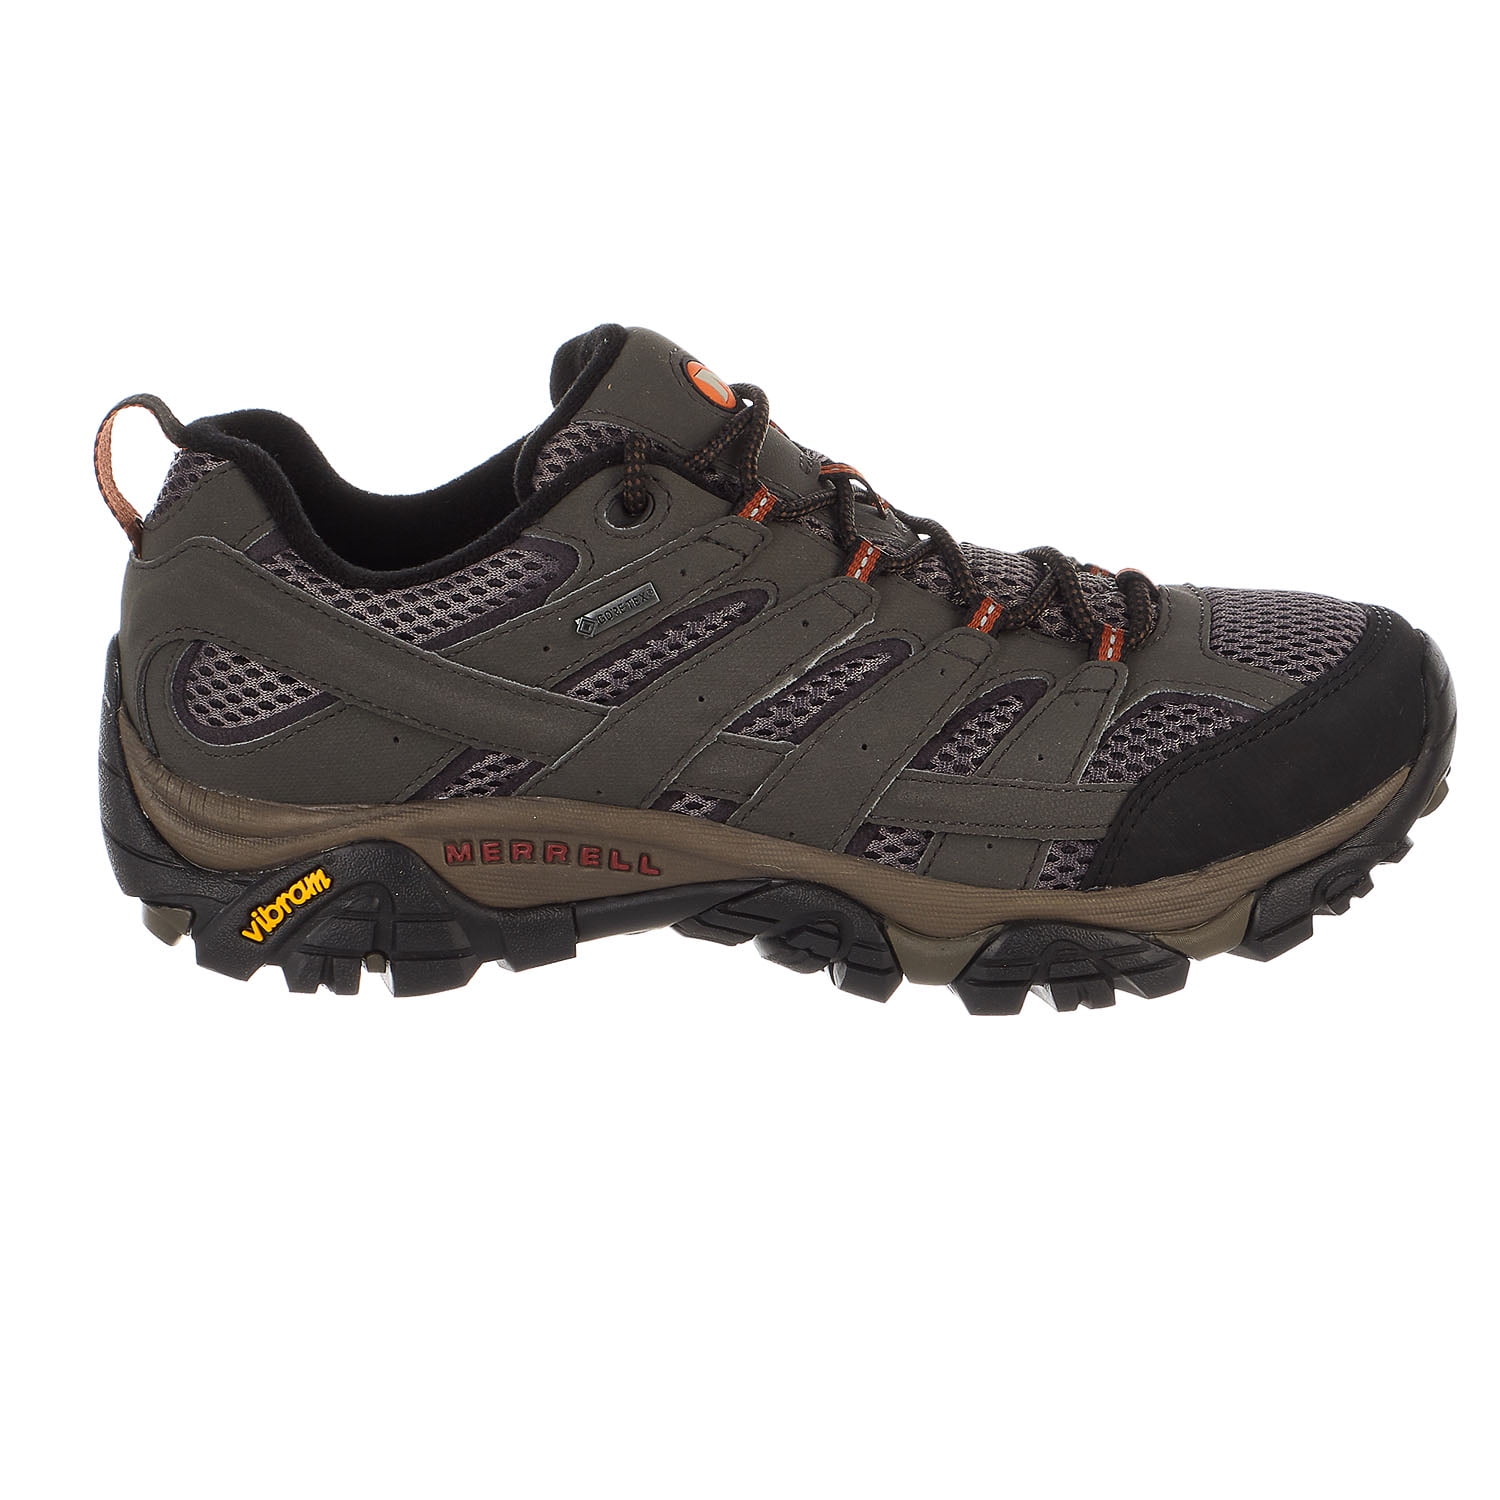 Buy > men's merrell hiking shoes > in stock